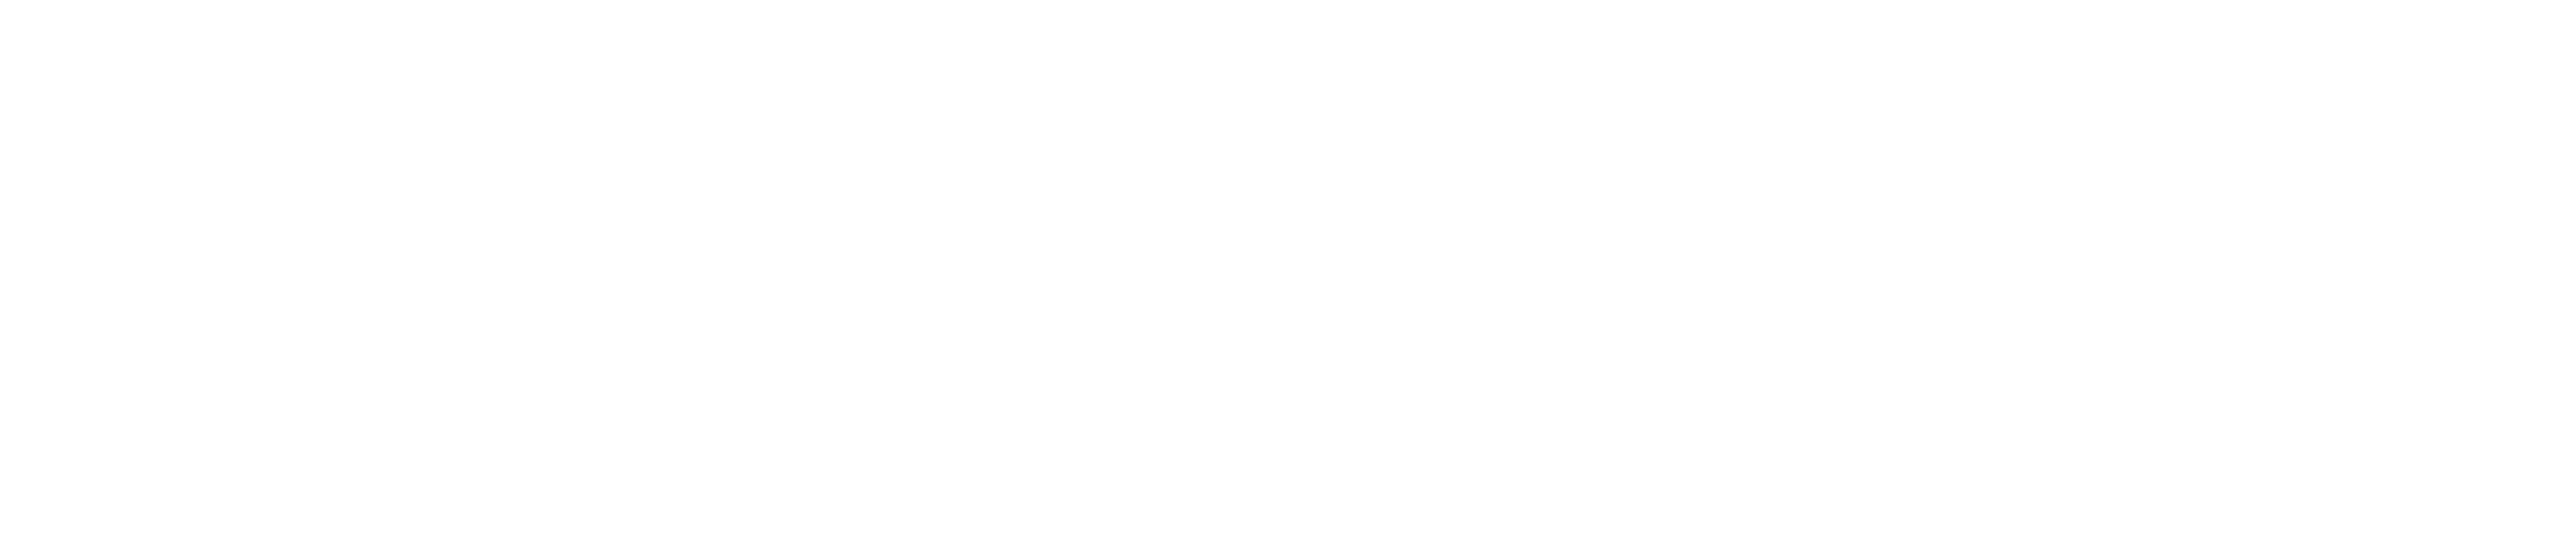 Baase dark logo